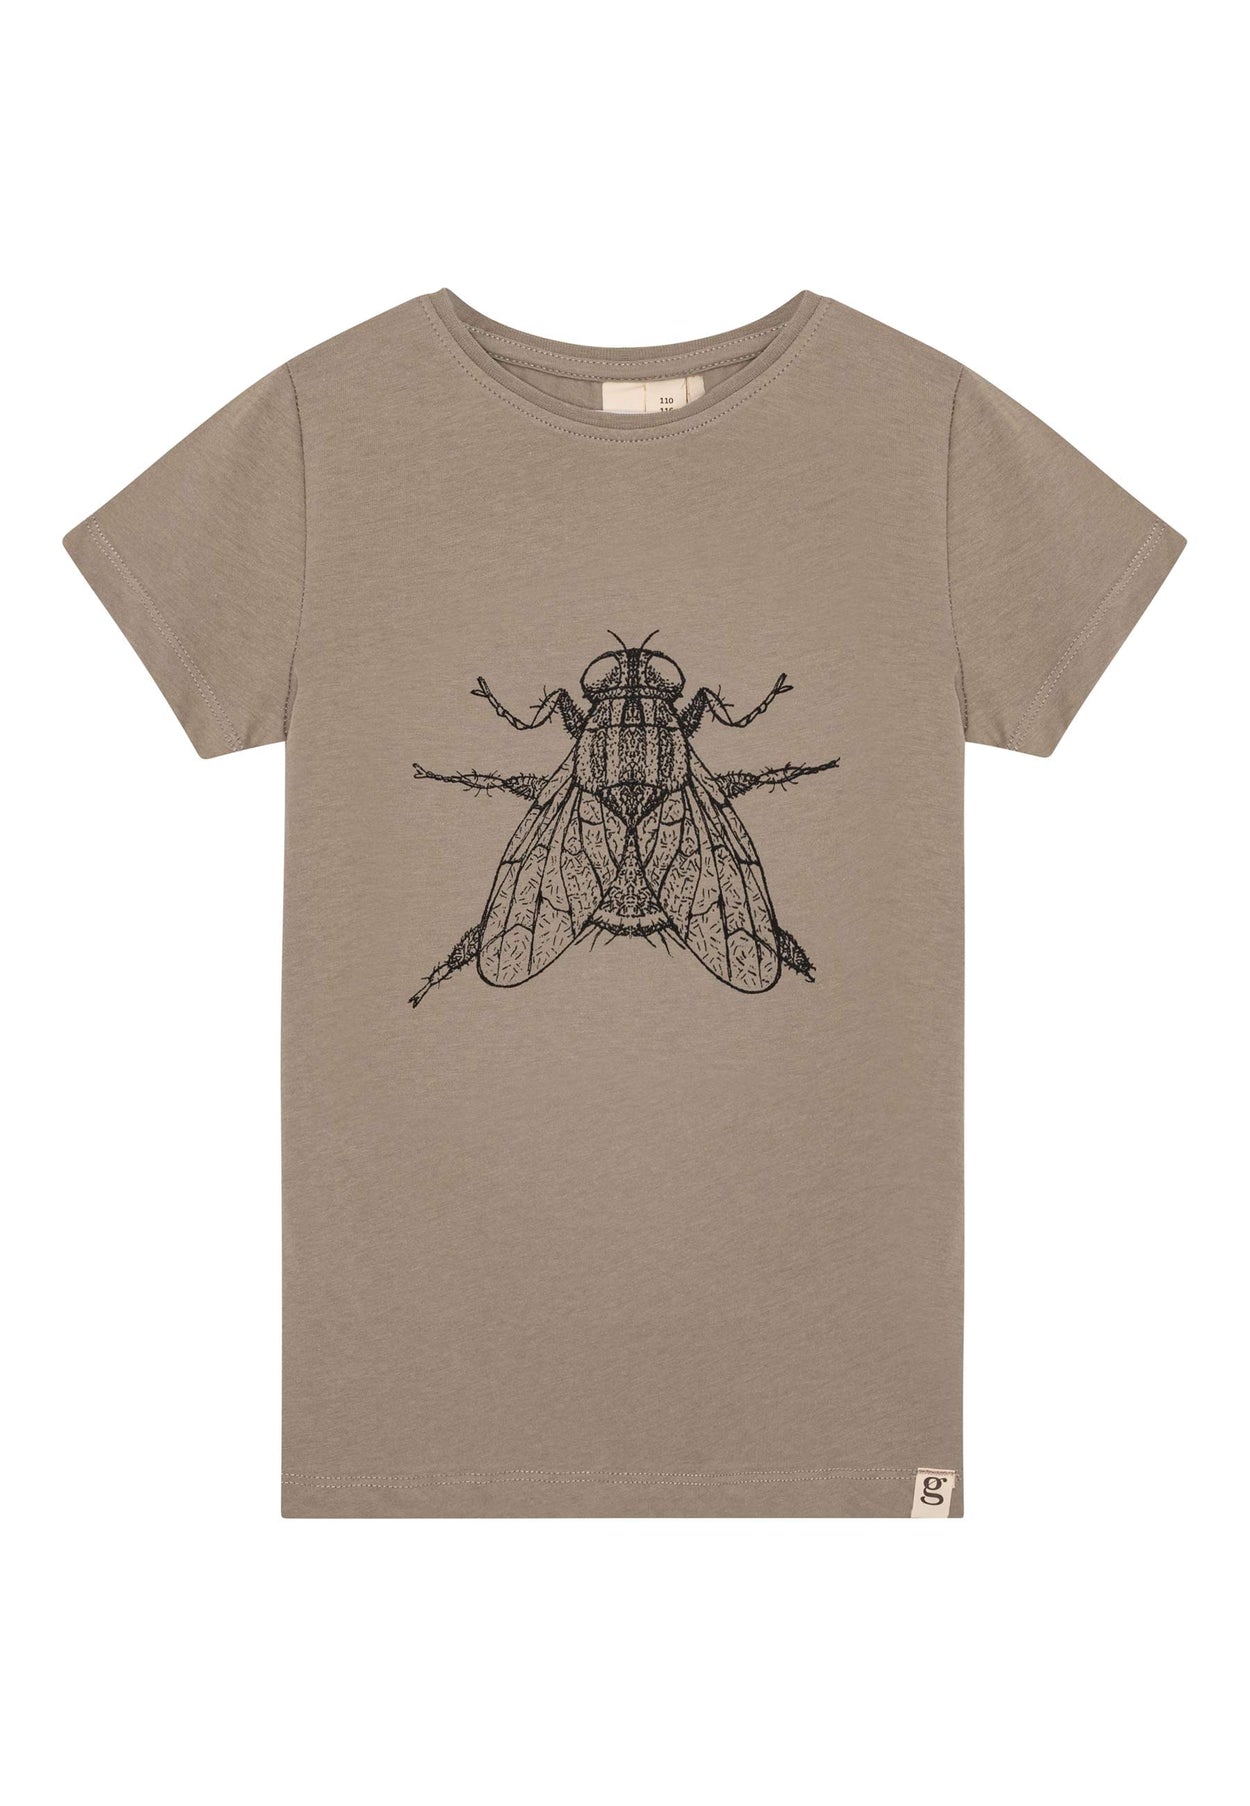 GROBUND Cleo t-shirten mini - den med flue